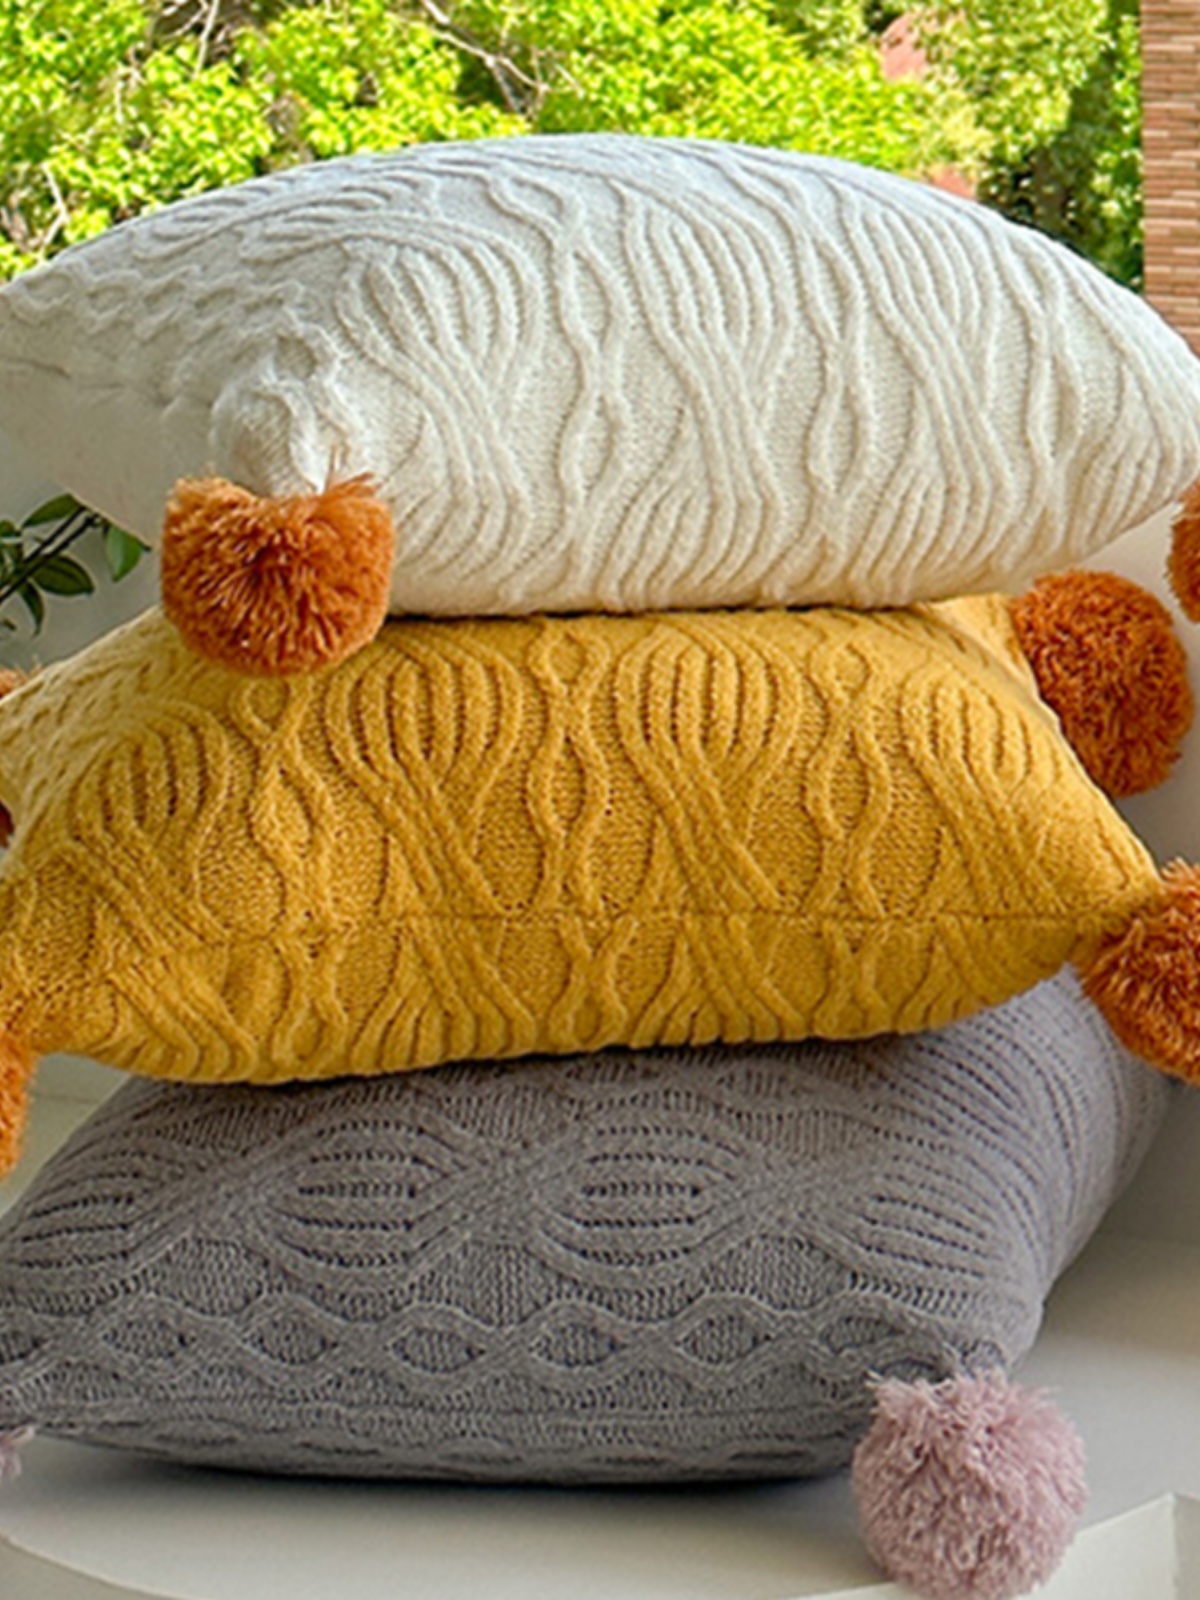 雪尼爾針織抱枕撞色球球可愛風北歐風客廳沙發靠枕靠墊含芯 (6.4折)